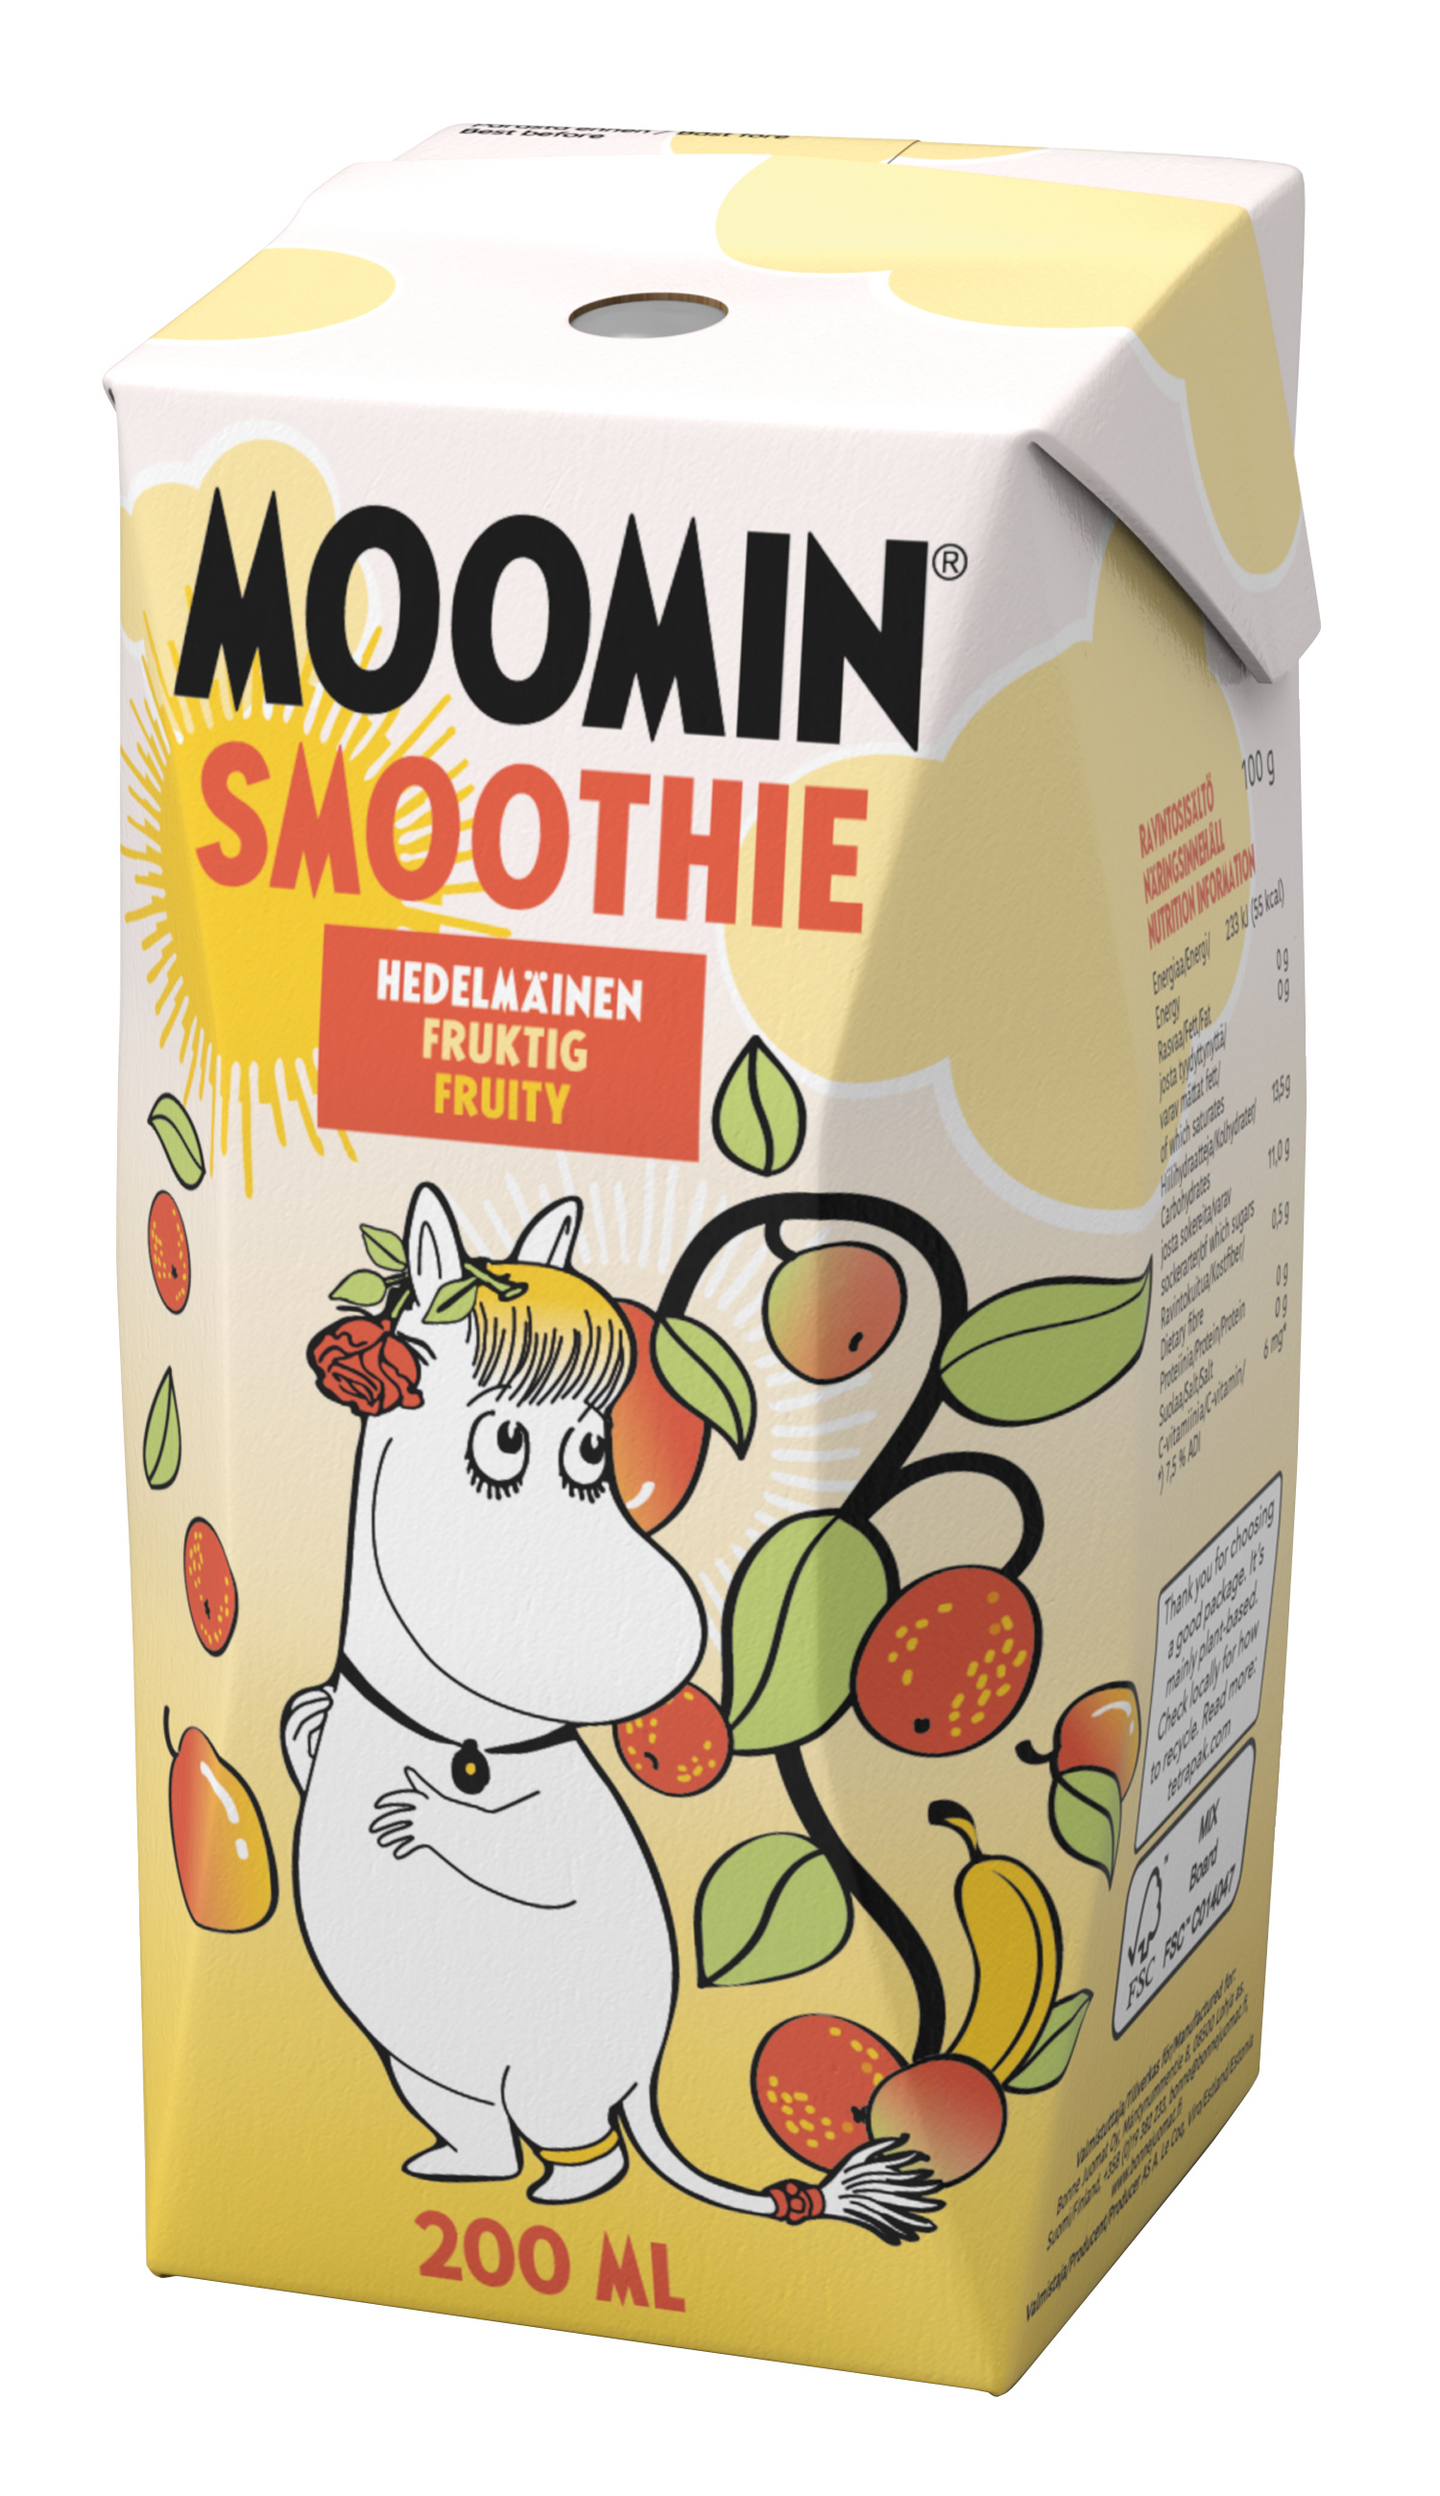 Moomin smoothie 2dl hedelmäinen | K-Ruoka Verkkokauppa